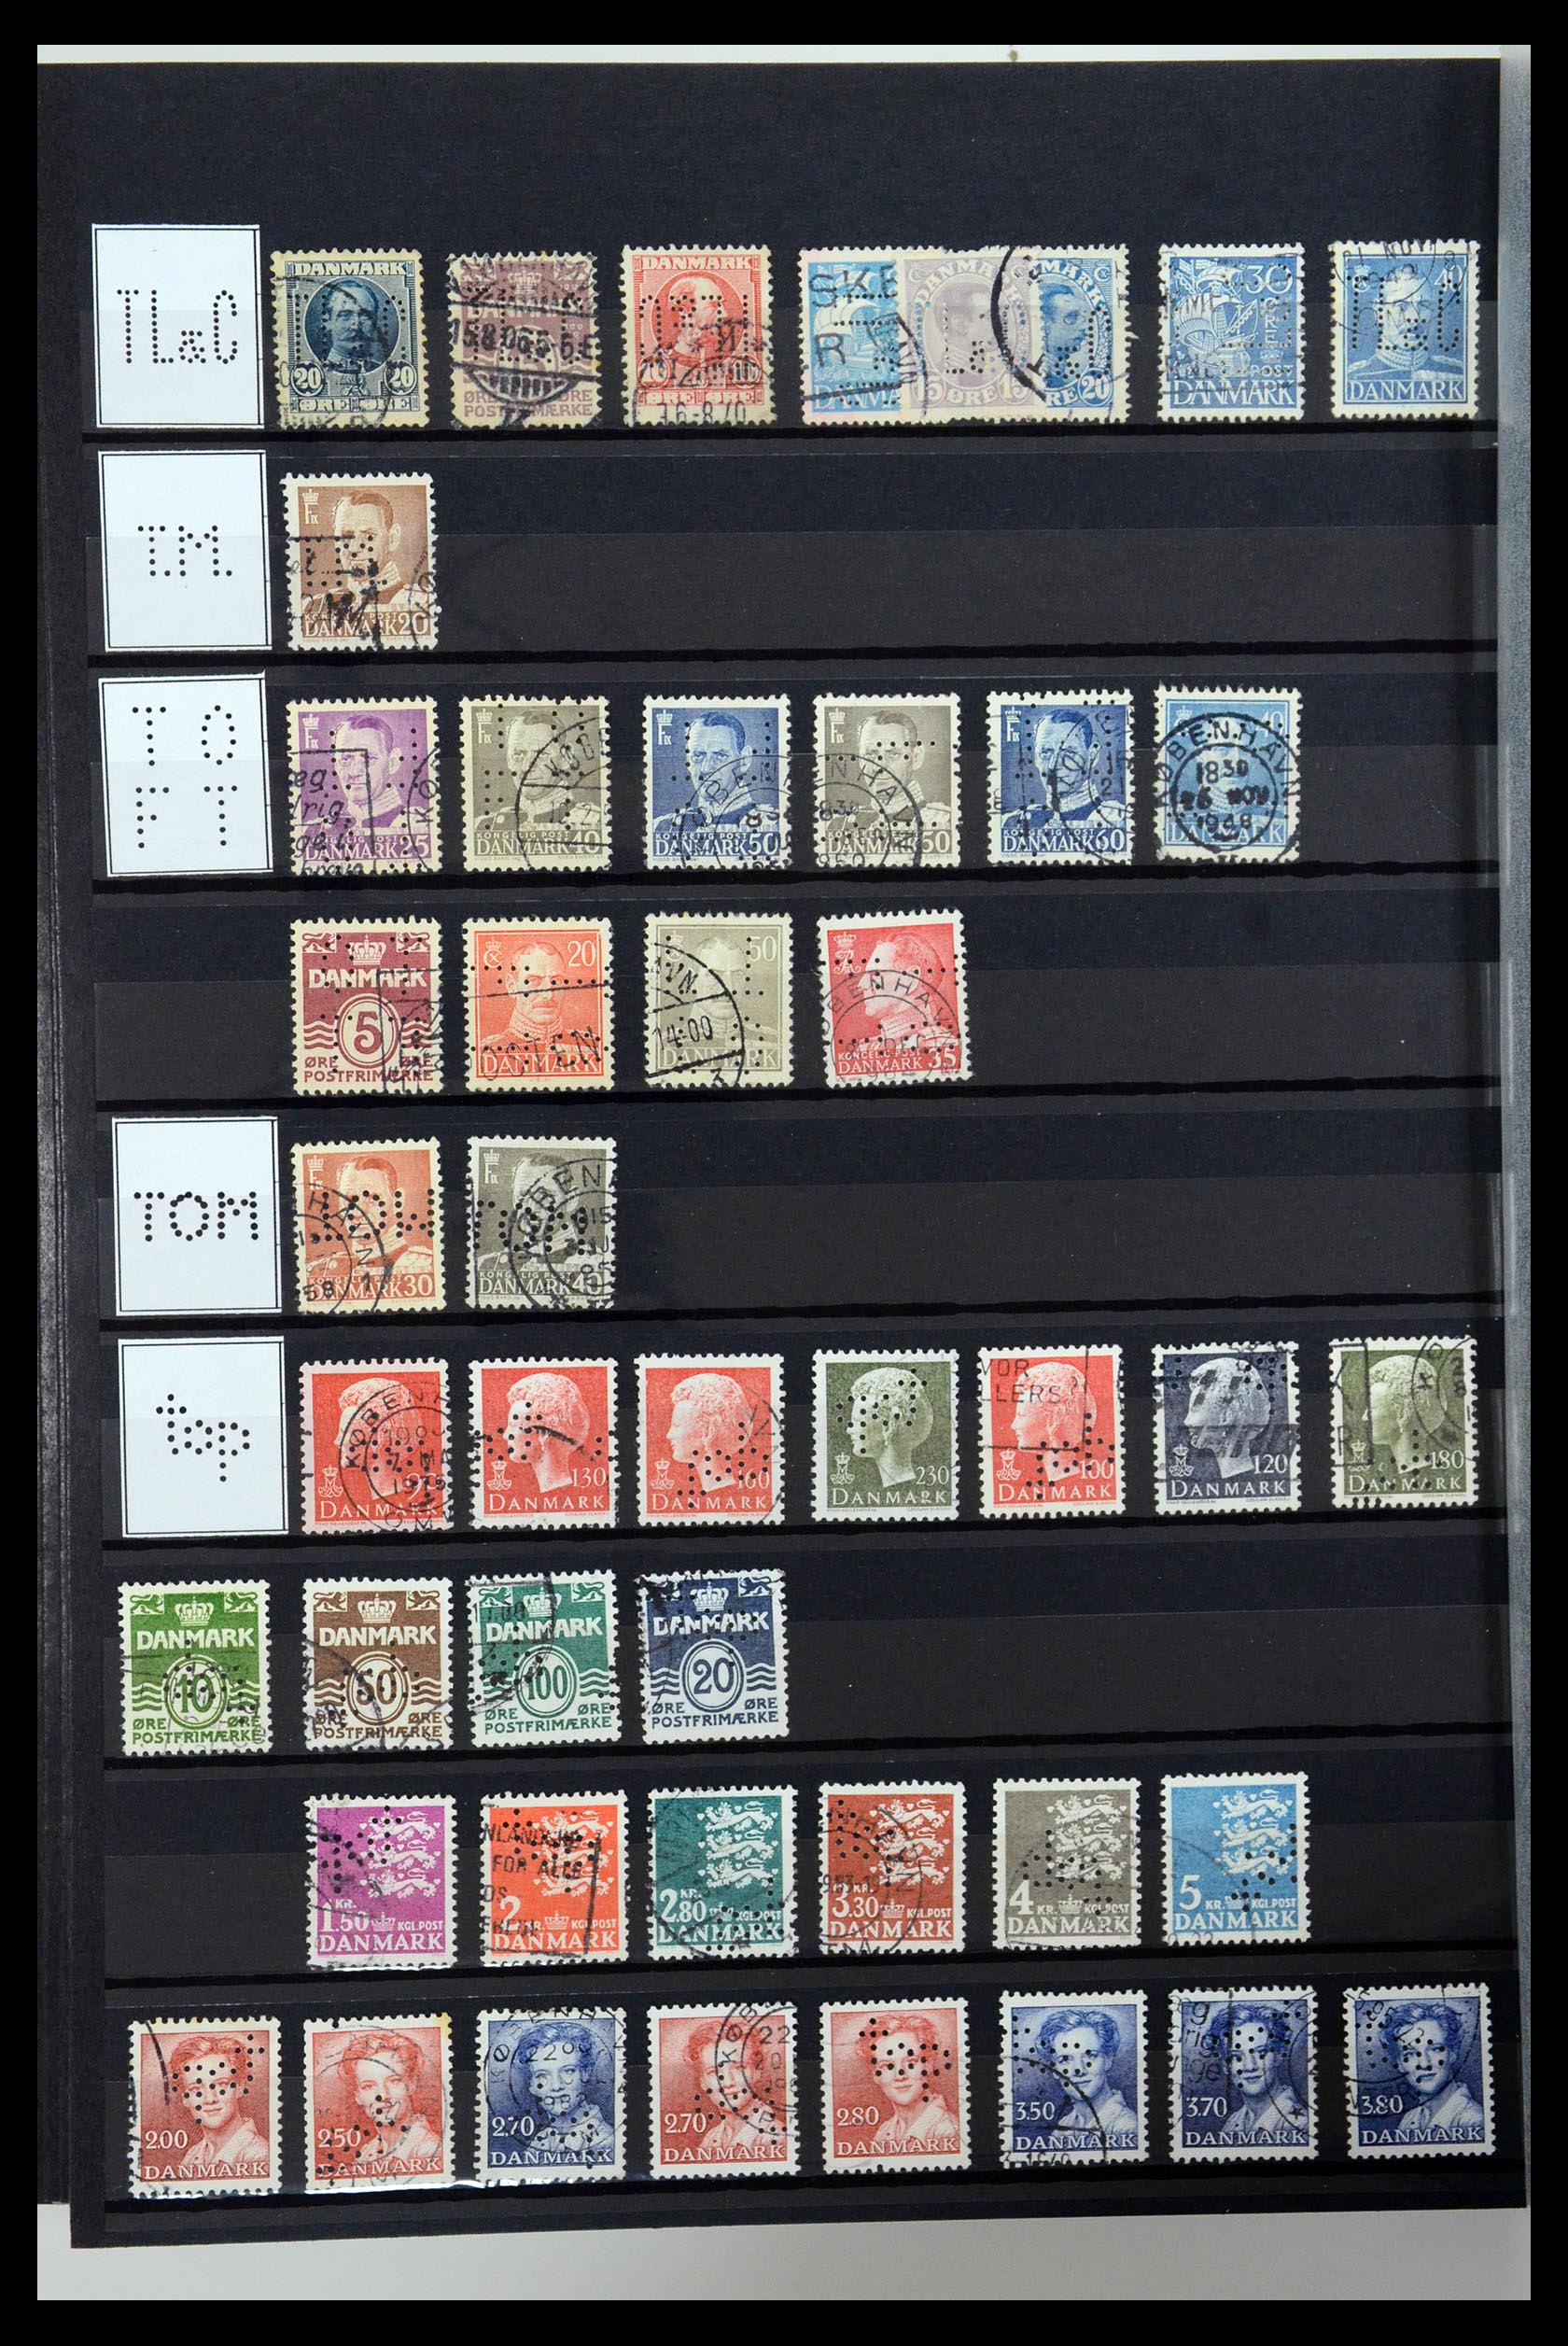 36396 216 - Postzegelverzameling 36396 Denemarken perfins.